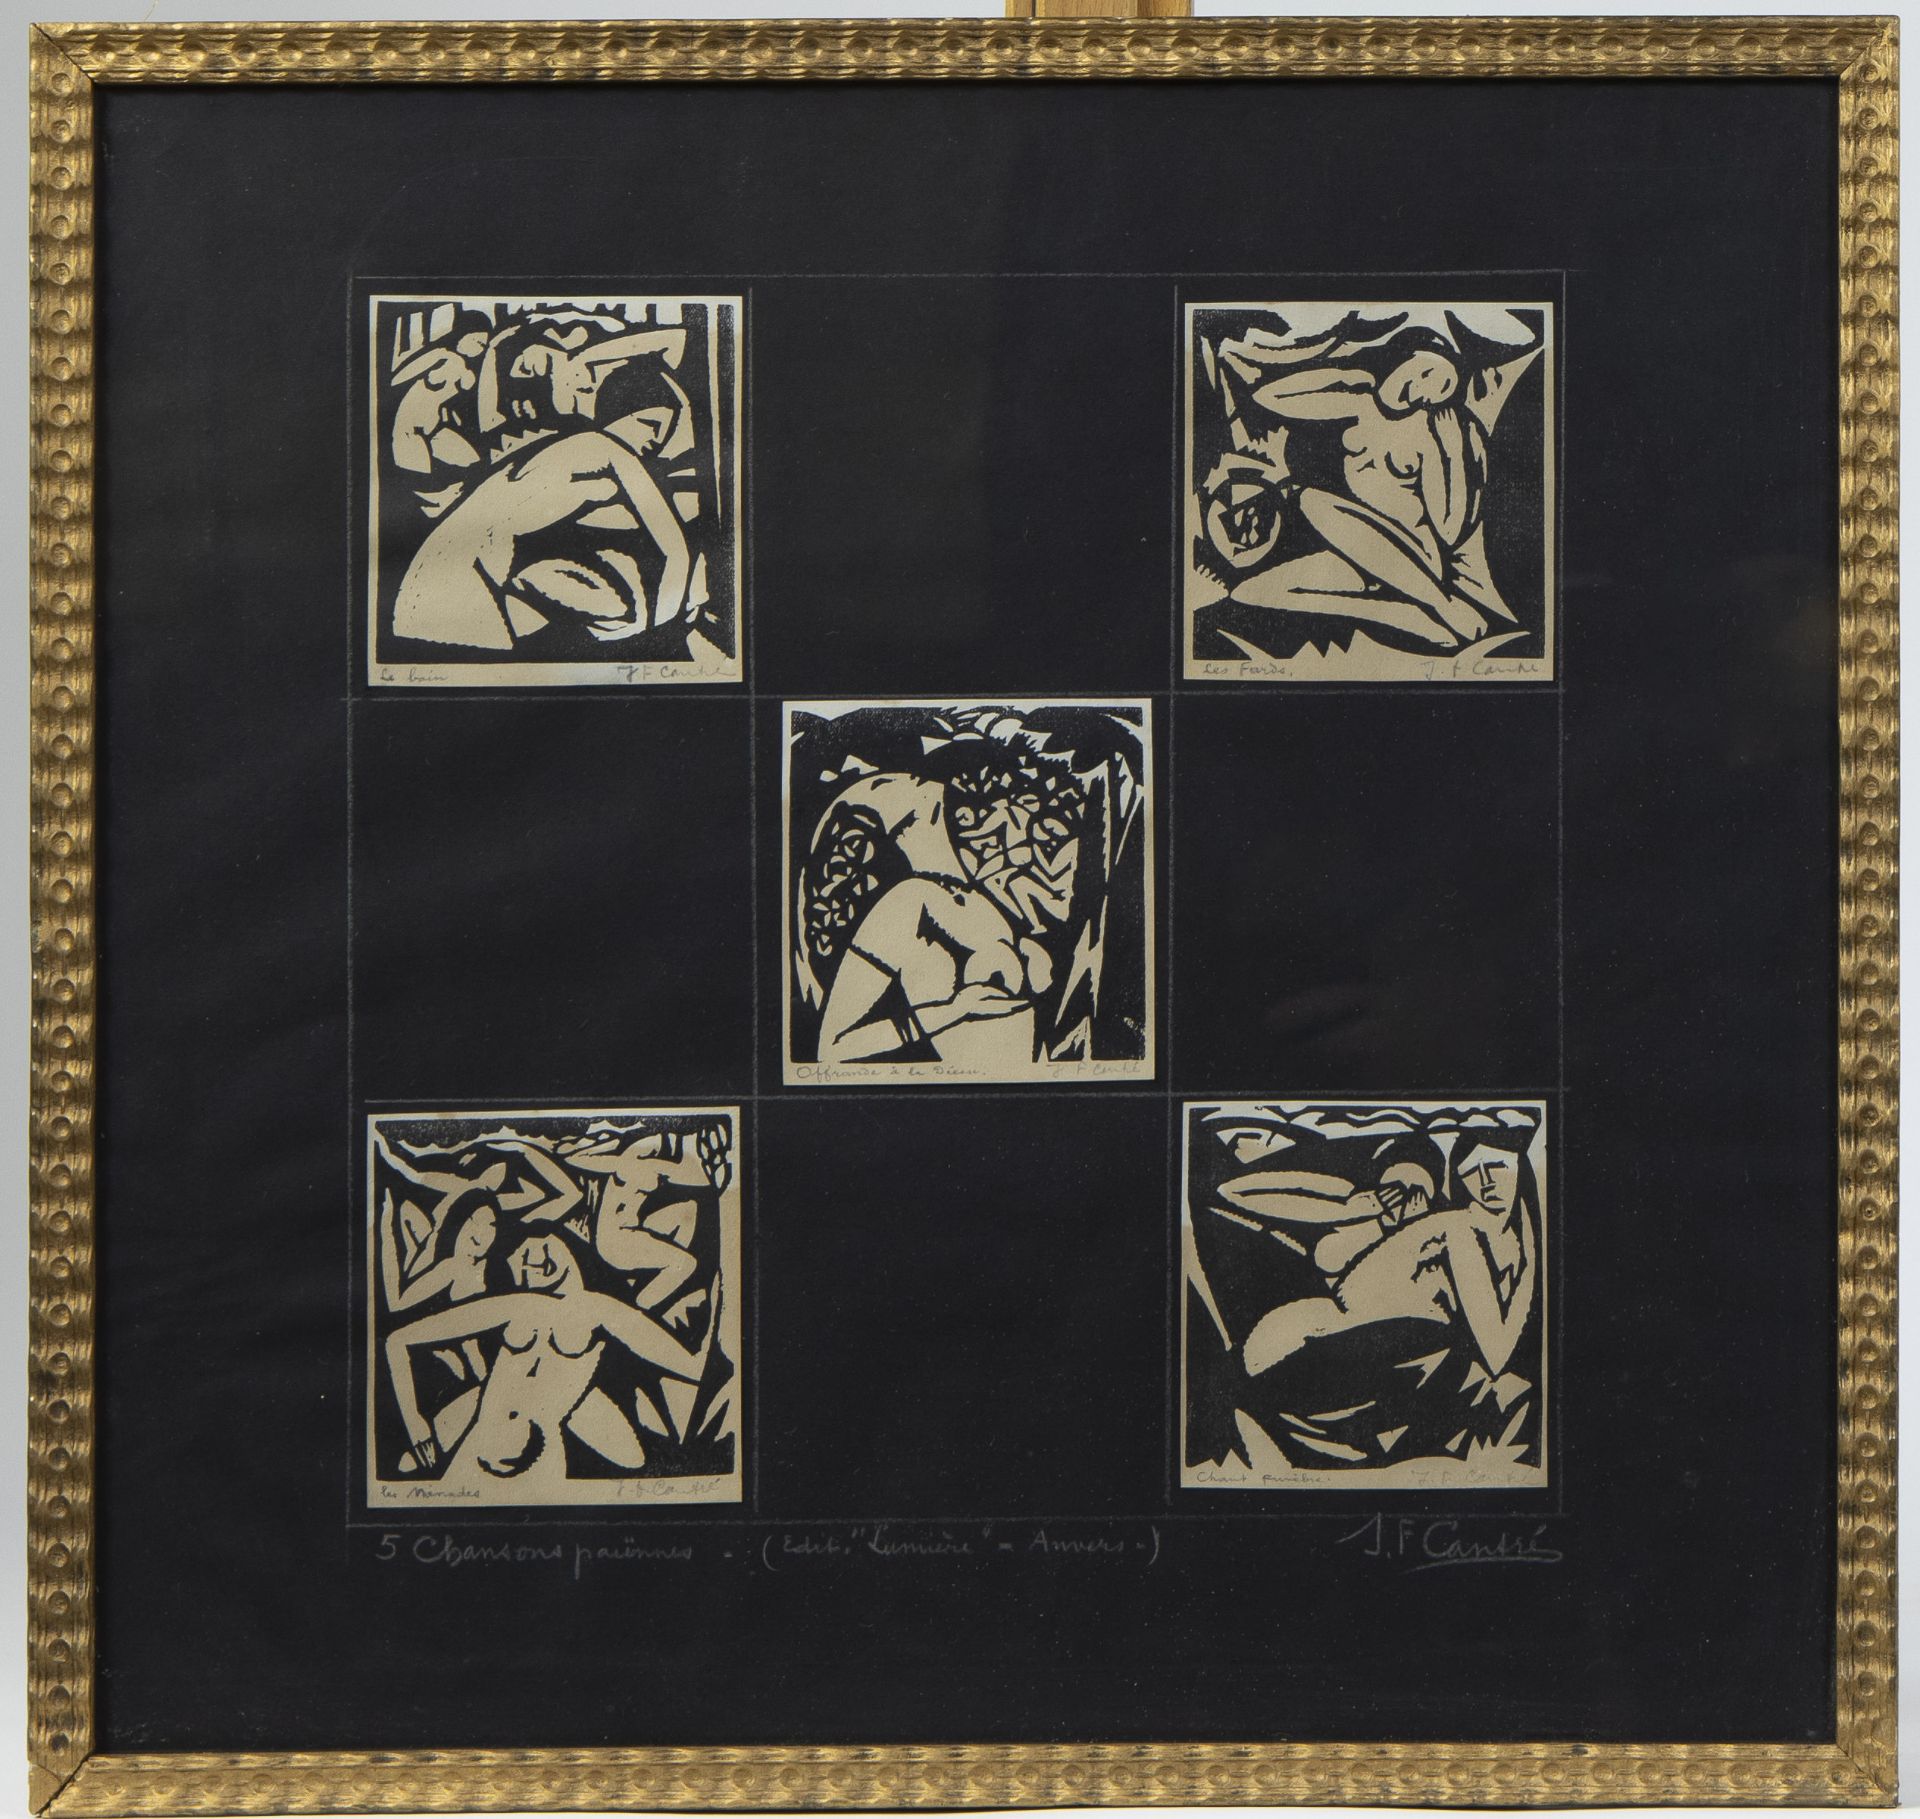 Jan Frans CANTRE (1886-1931), woodcuts 5 Chanssons Païennes, signed and titled, édition Lumière Anve - Bild 2 aus 3